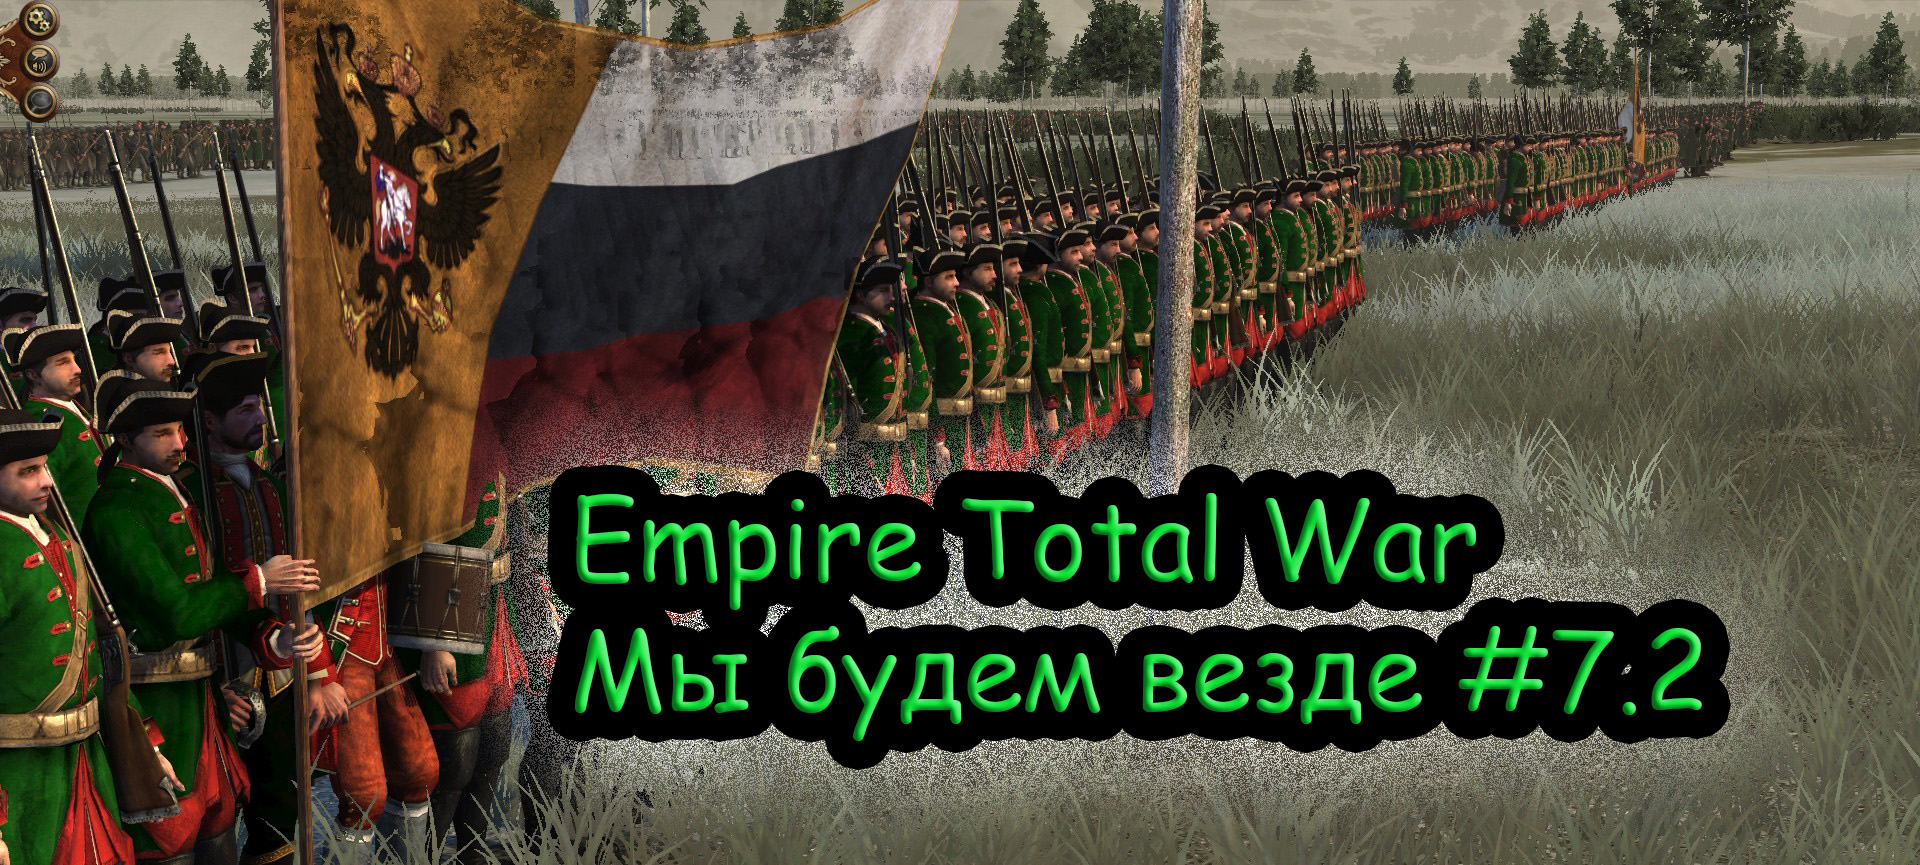 ФИНАЛ Прохождение Empire Total War за Российскую Империю №7.2